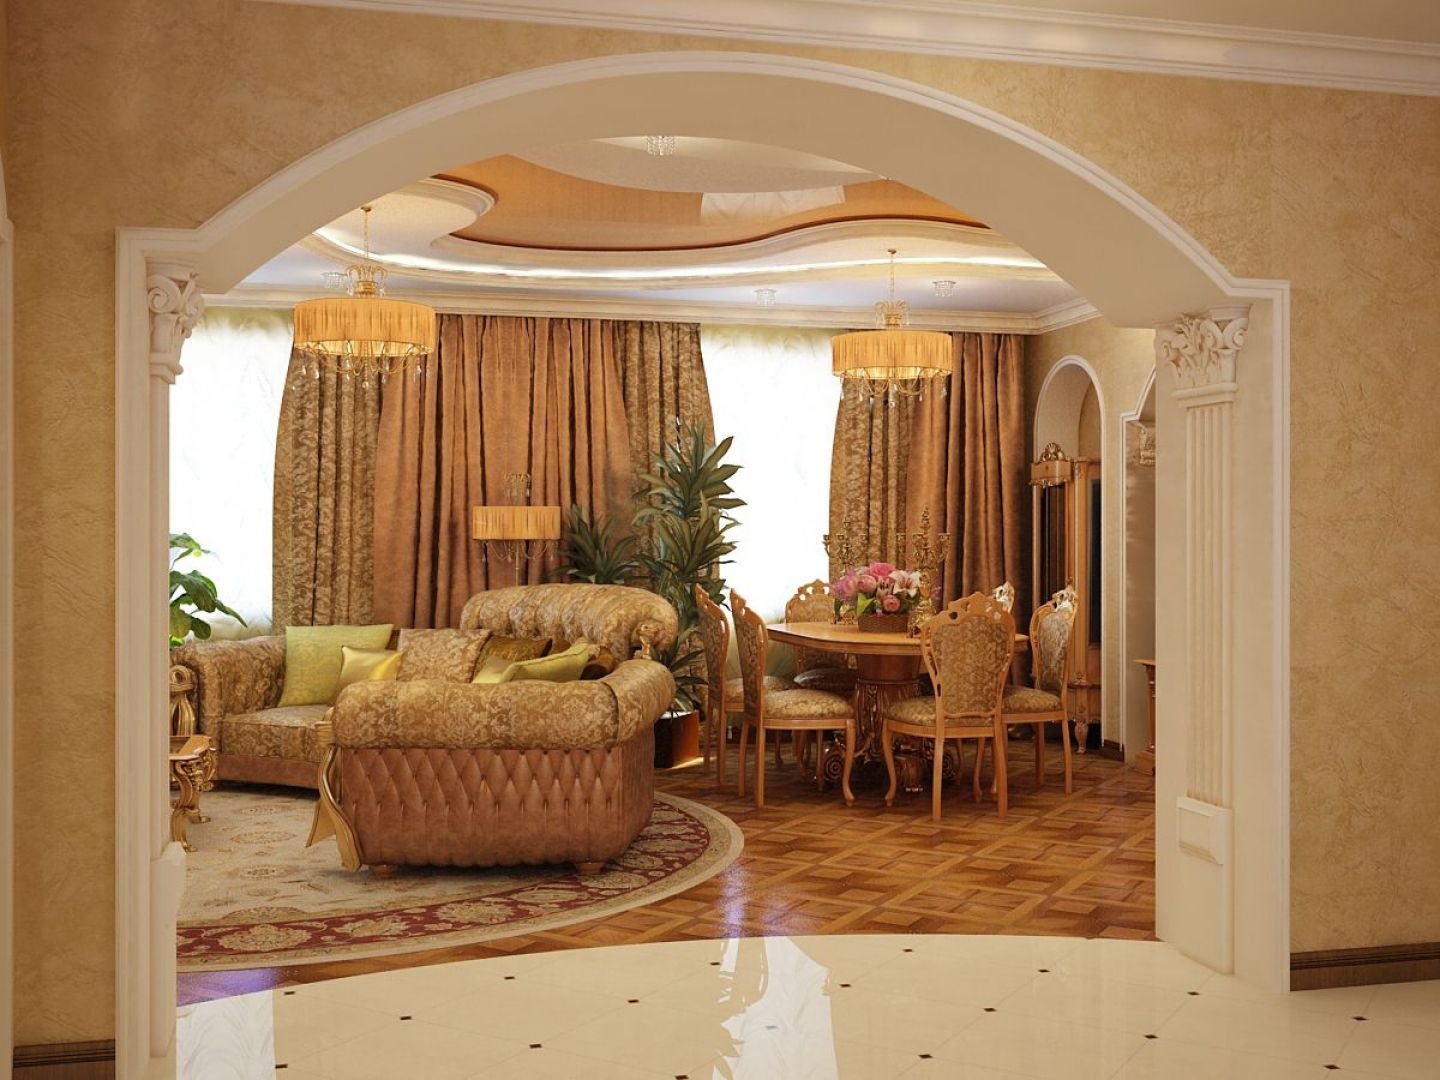 Примеры дизайна интерьера зала с арками из гипсокартона